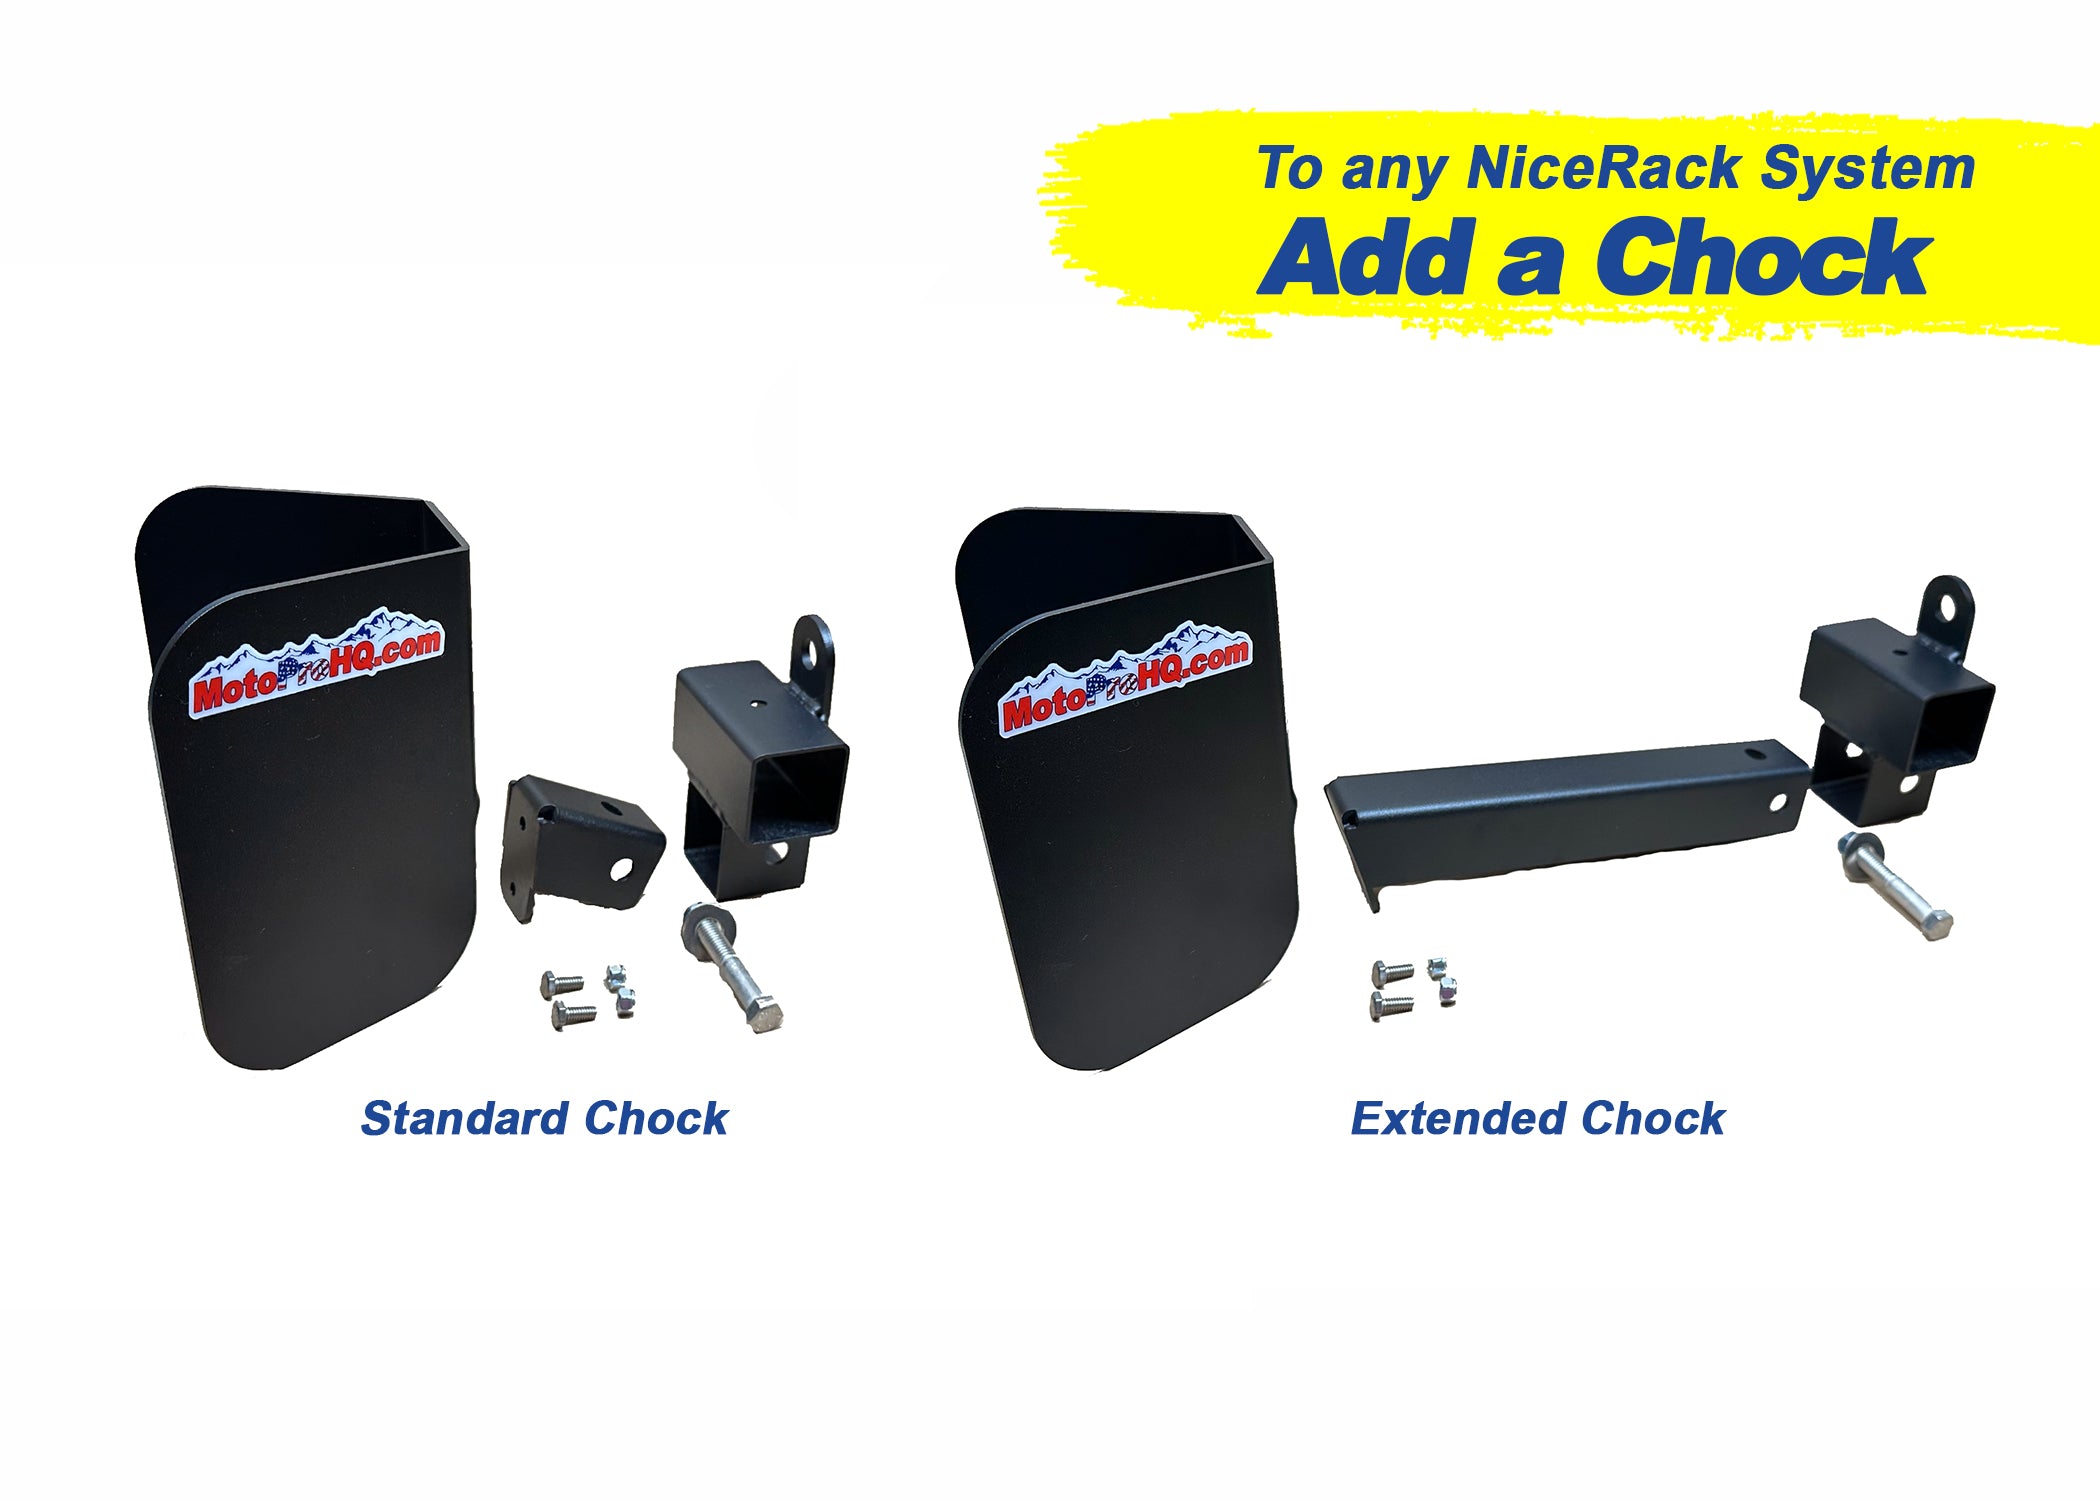 NiceRack | Add a Chock